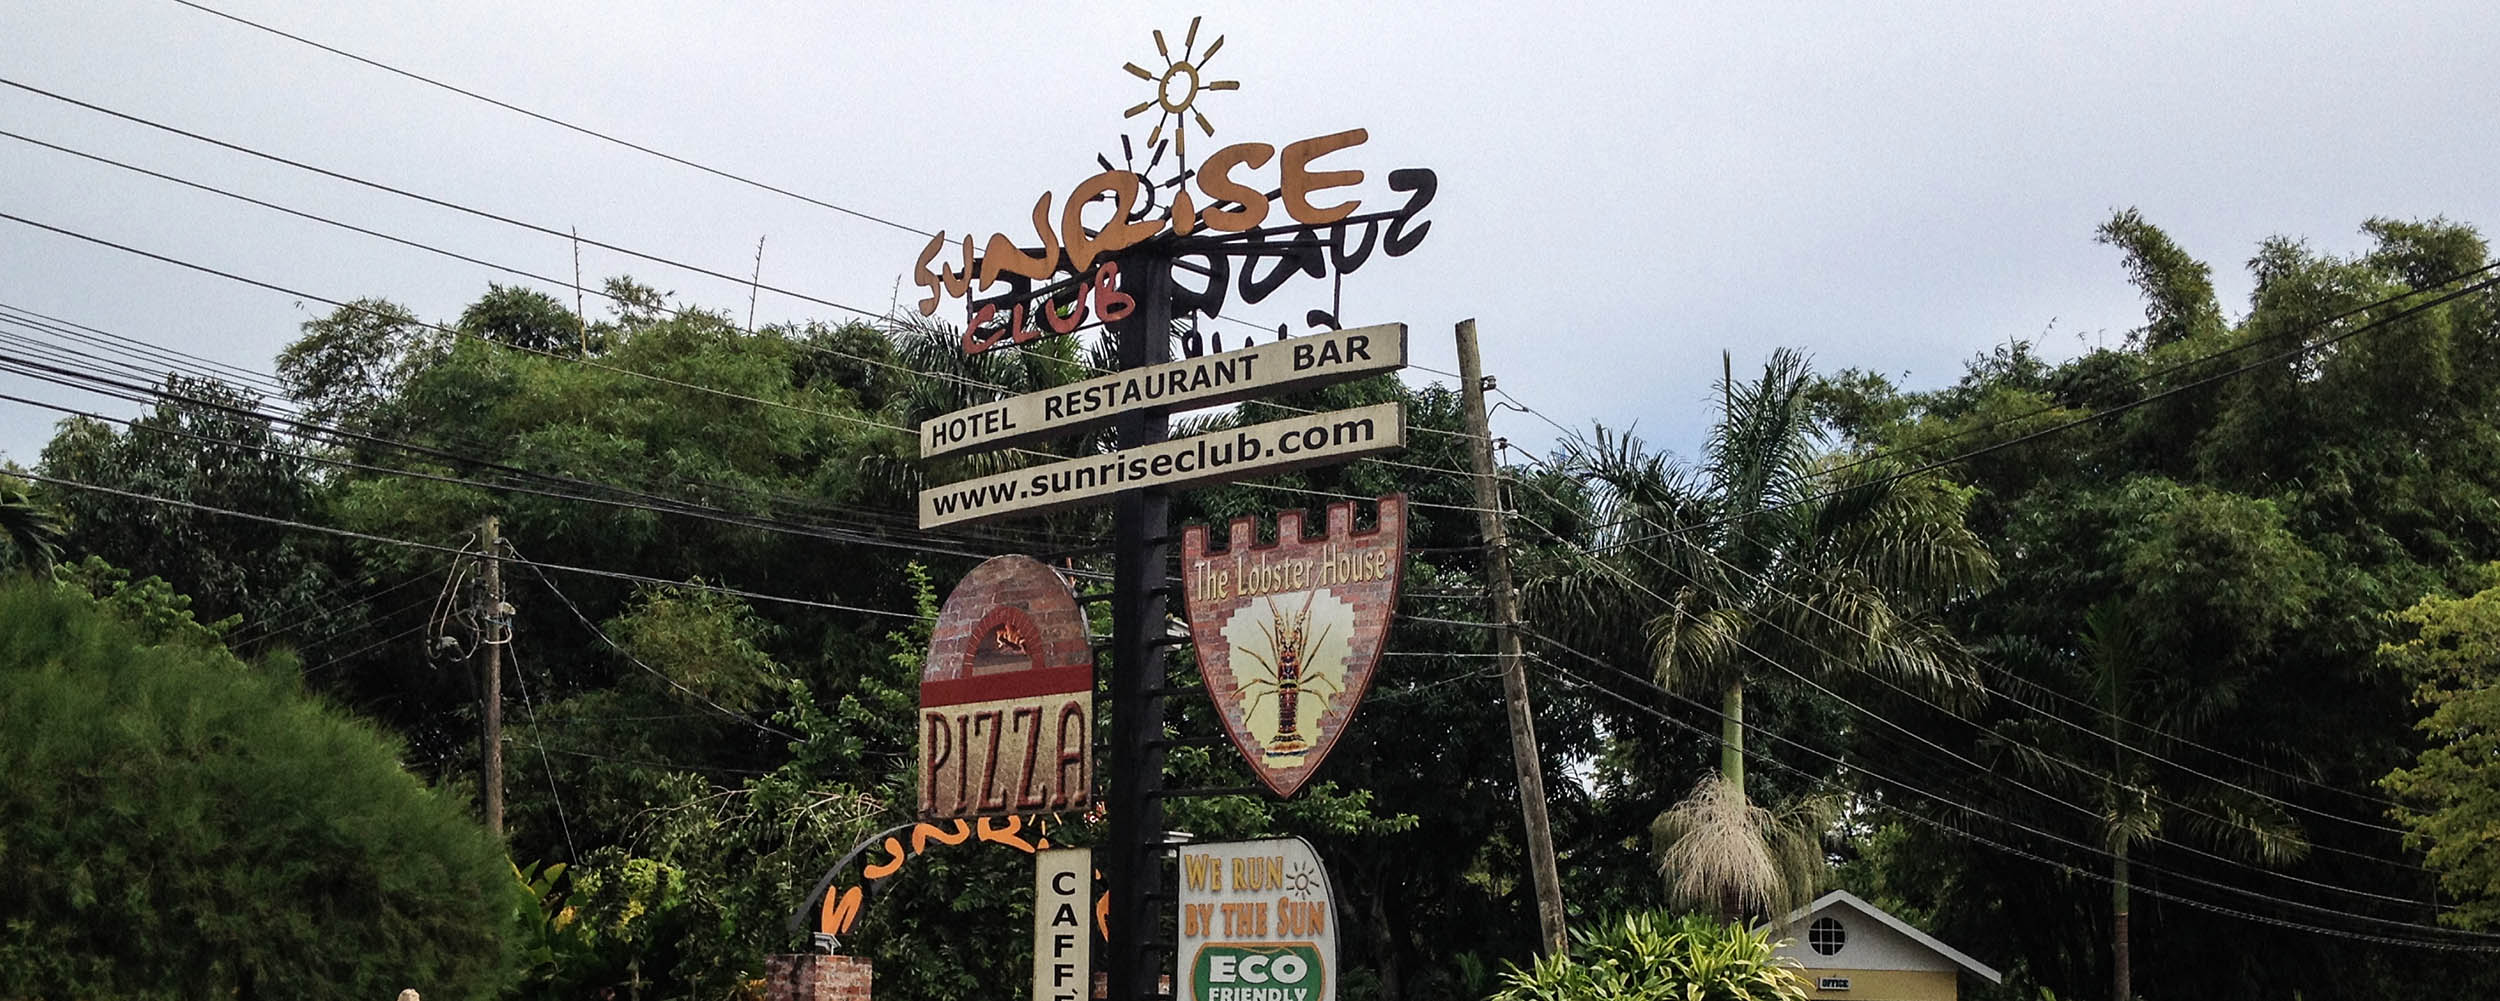 Sunrise Hotel - Negril Jamaica